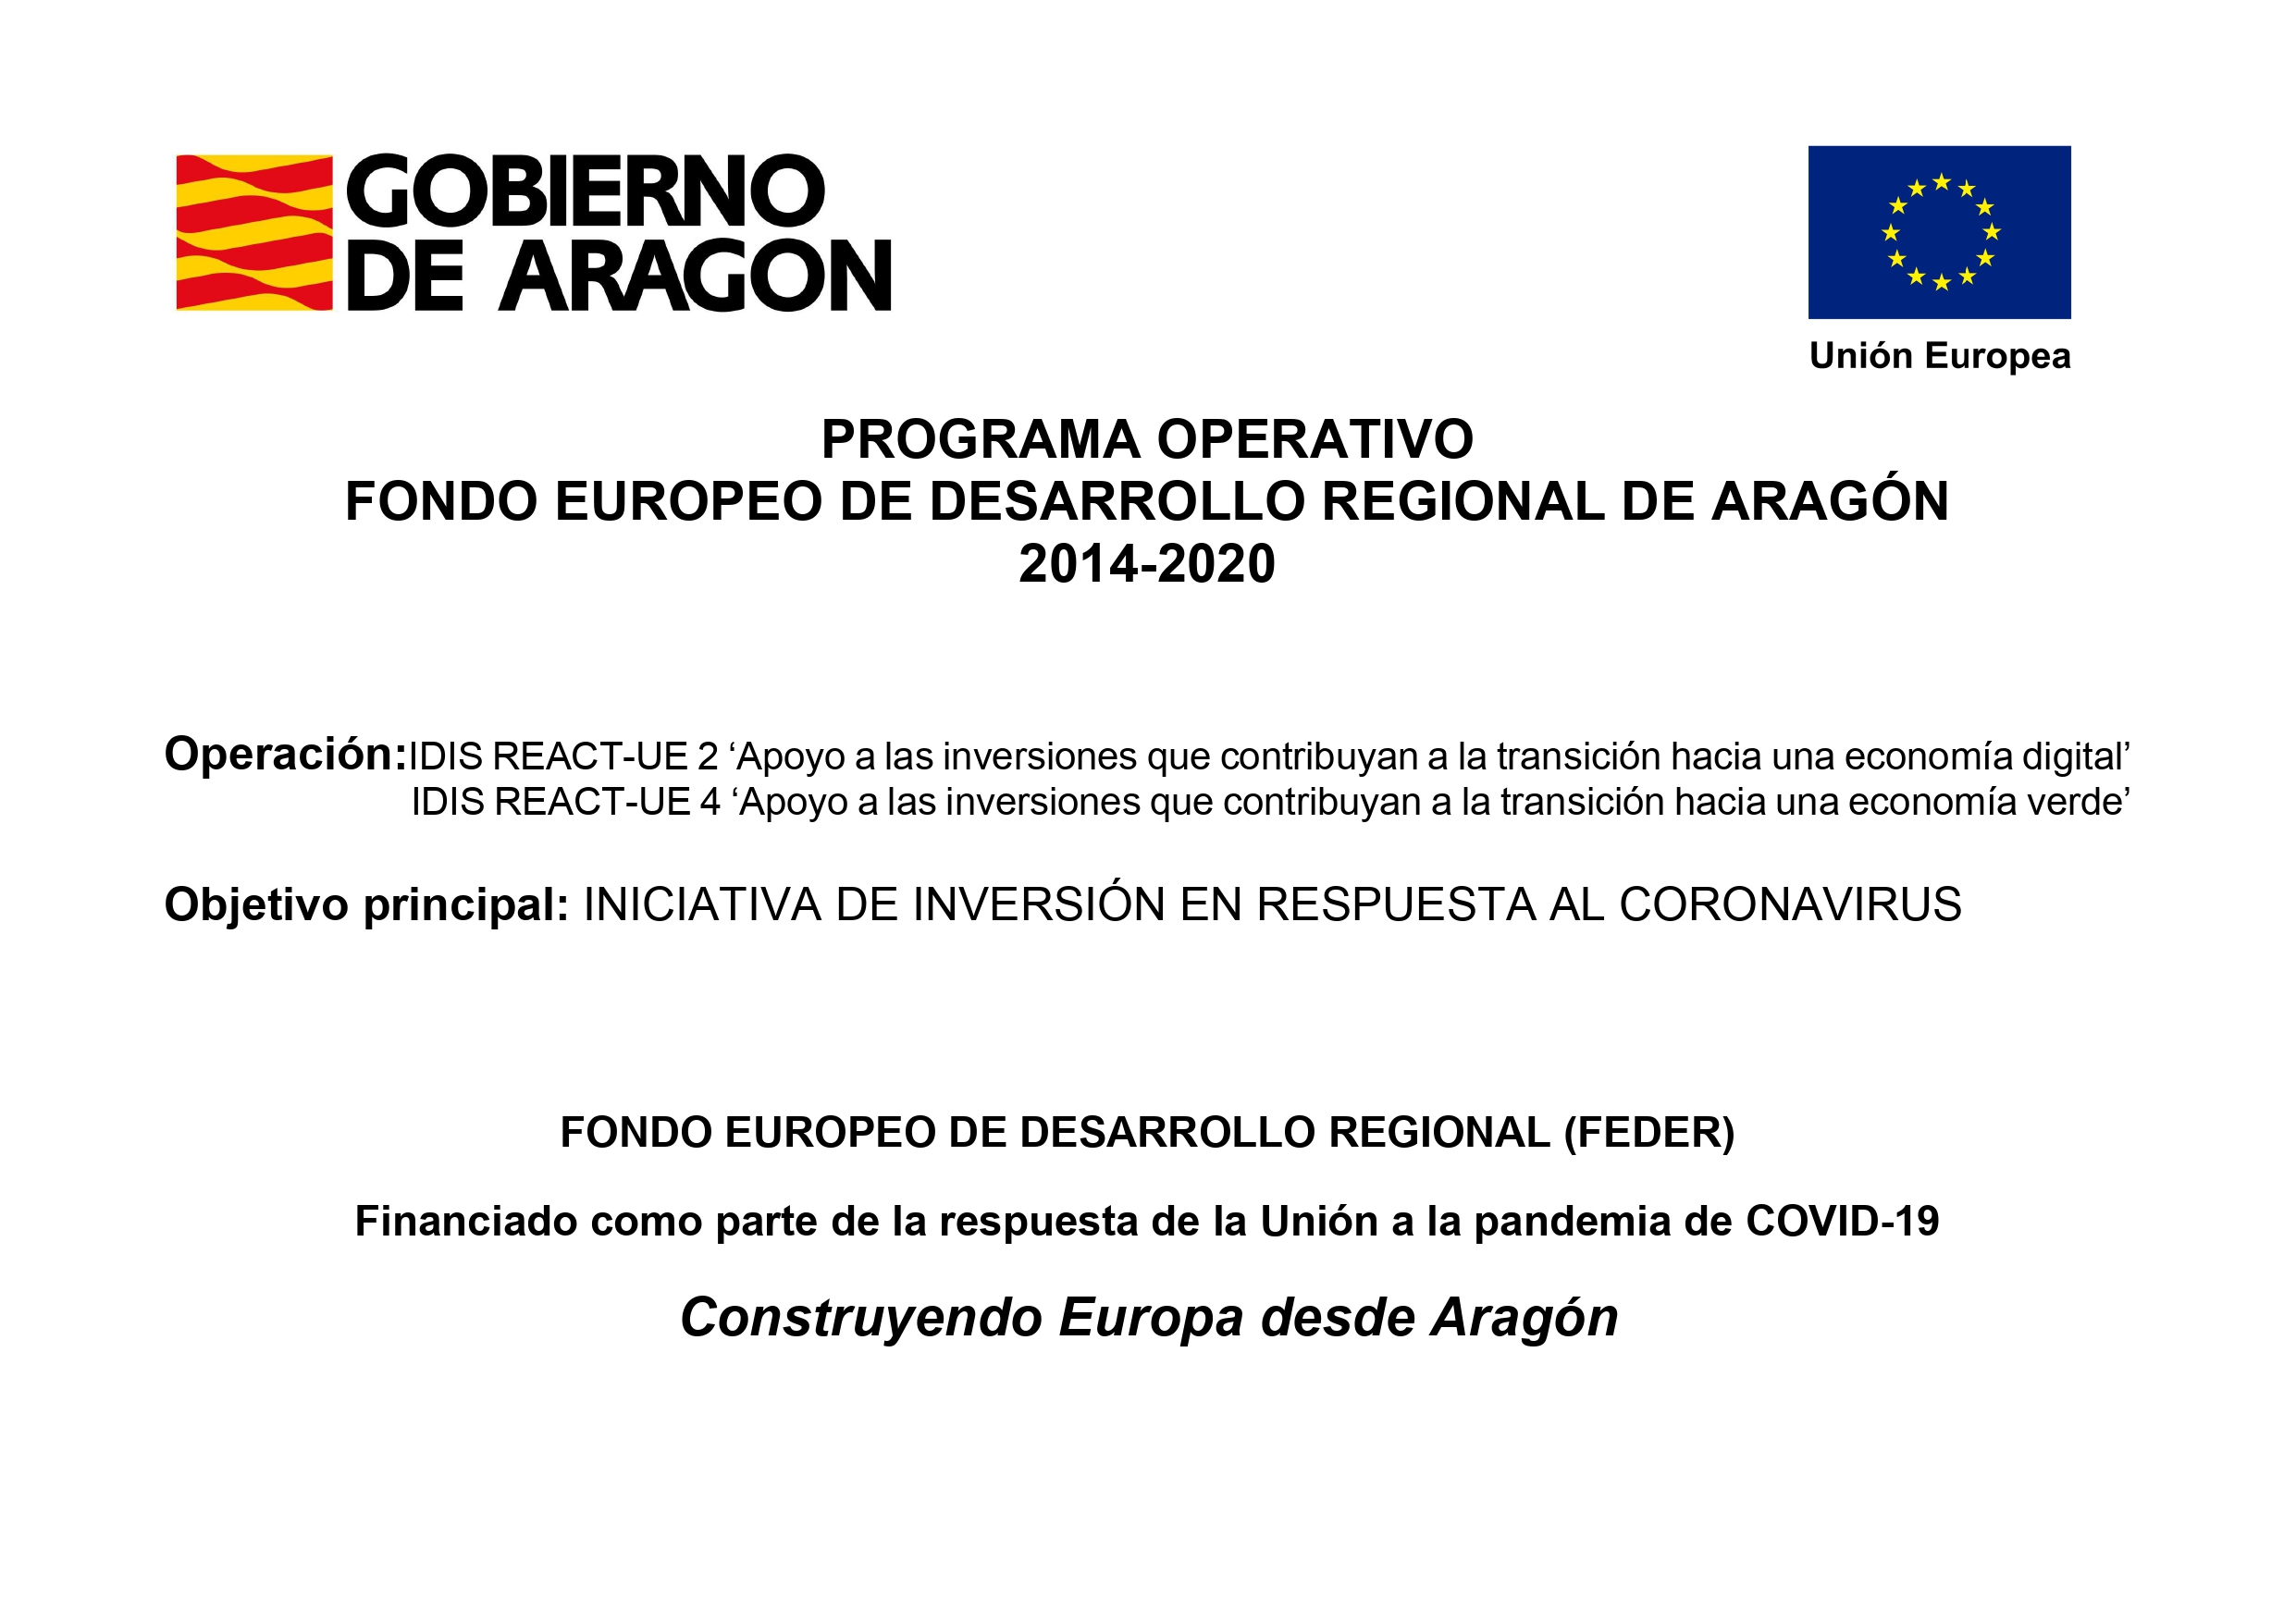 PROGRAMA OPERATIVO FONDO EUROPEO DE DESARROLLO REGIONAL DE ARAGÓN 2014-2020